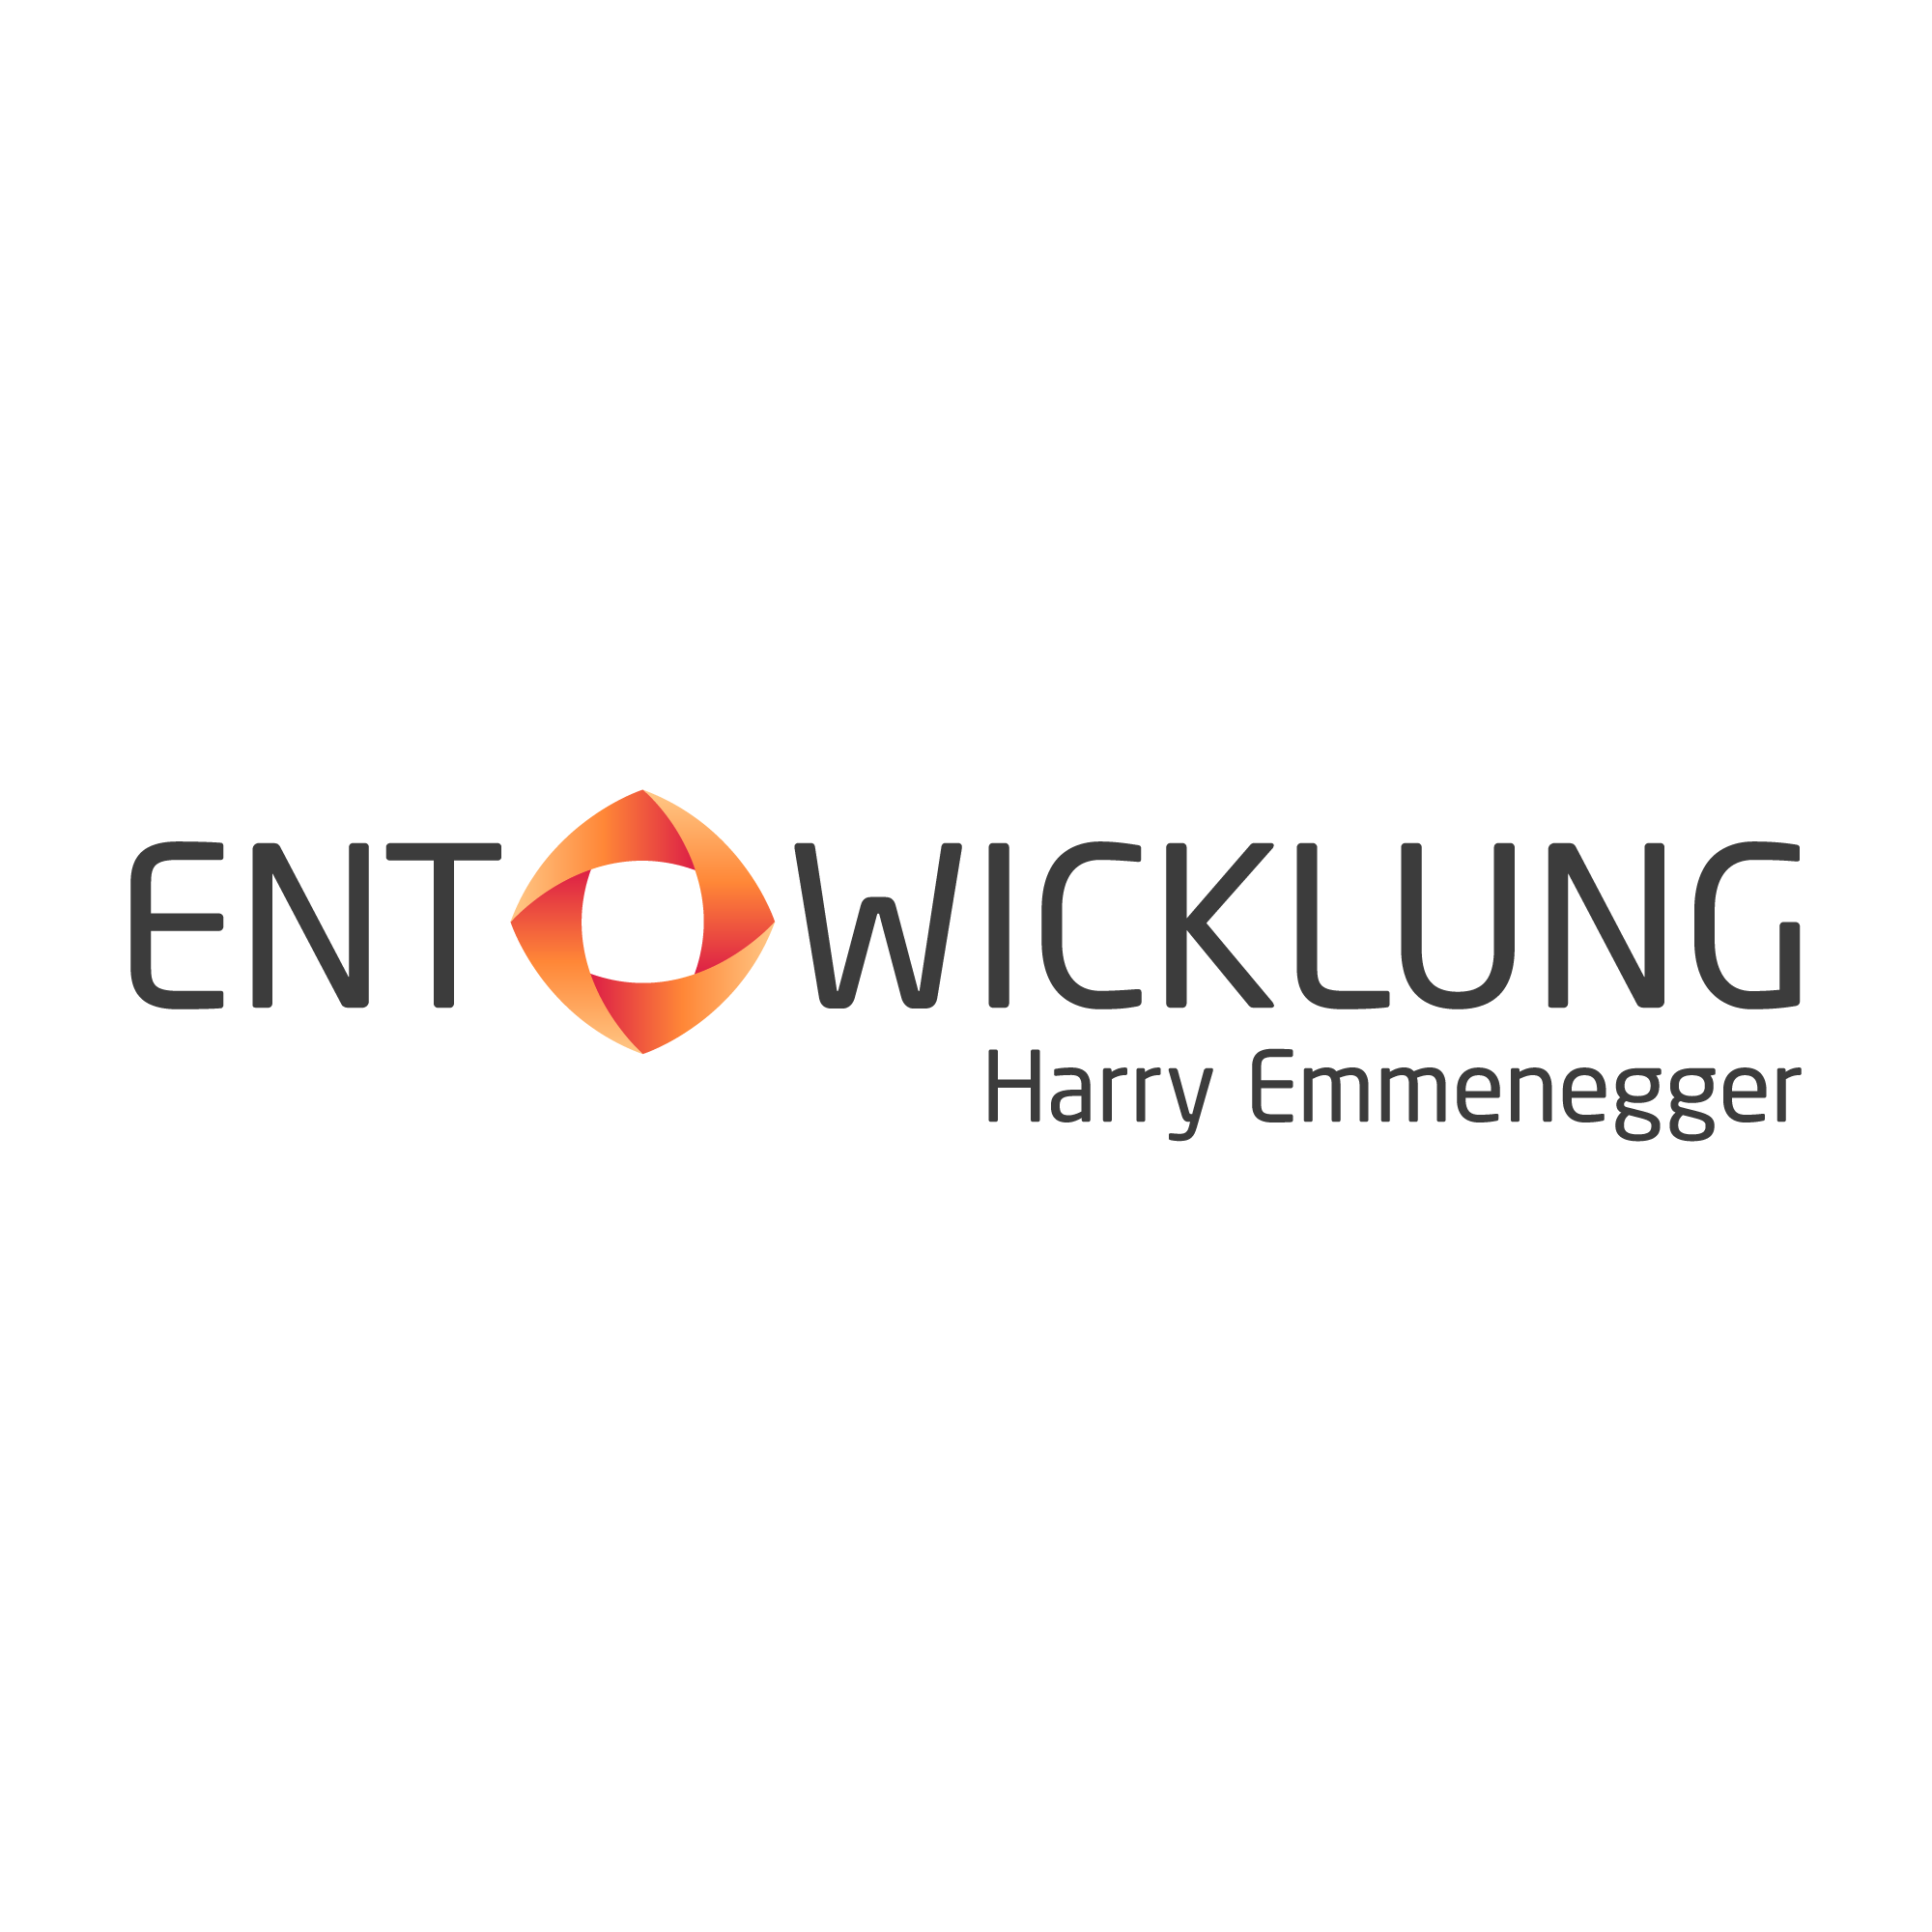 EMMENEGGER PARTNER GmbH